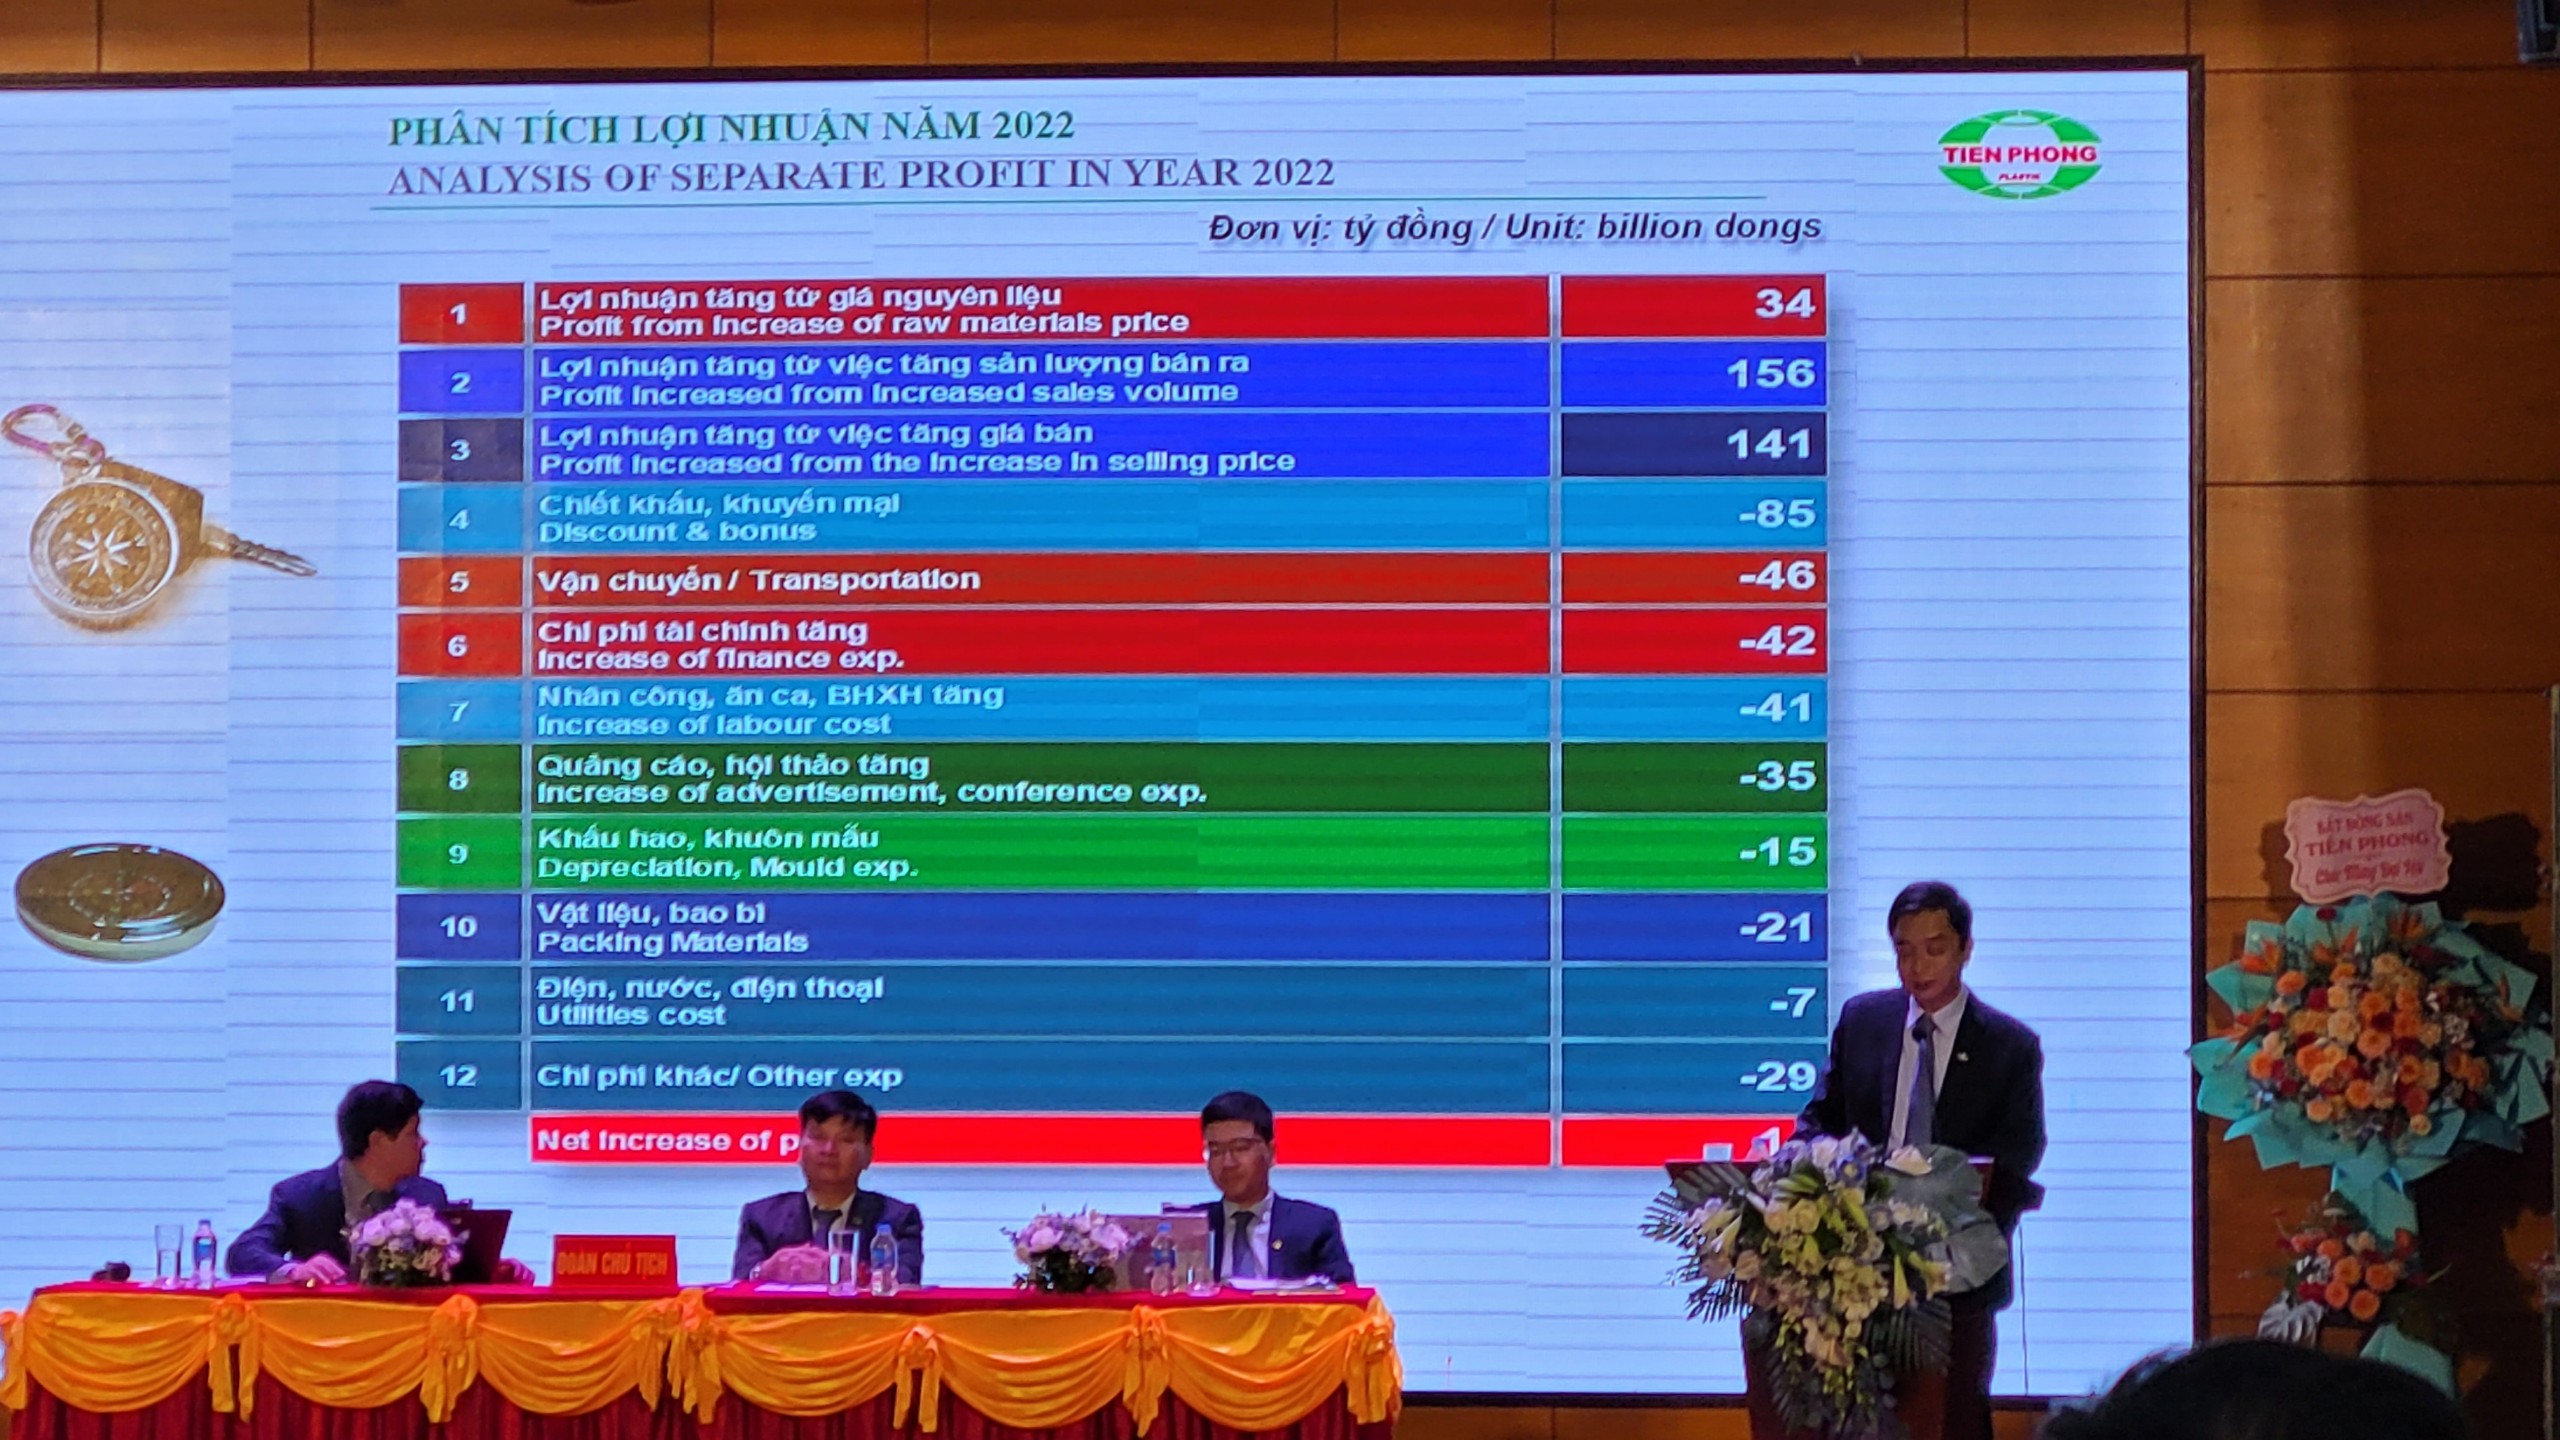 Ban lãnh đạo Nhựa Tiền Phong báo cáo tỉnh hình tài chính công ty năm 2022.